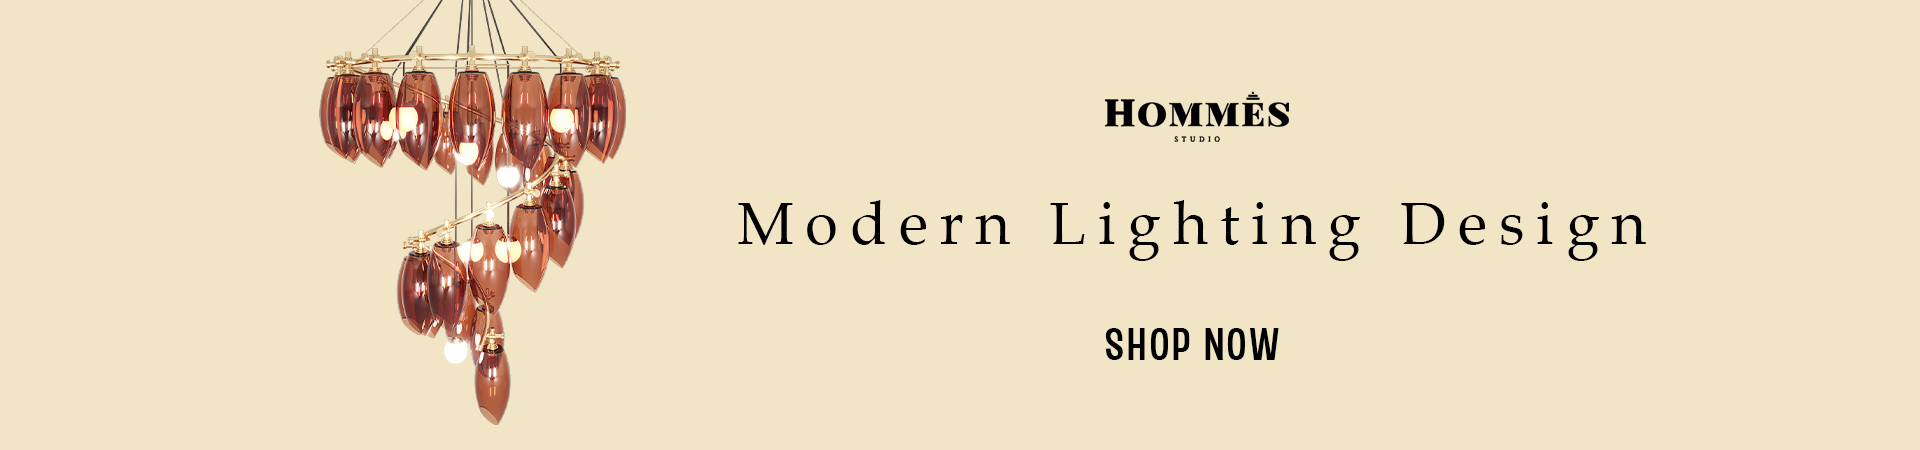 hommes studio lighting 2 banner blog